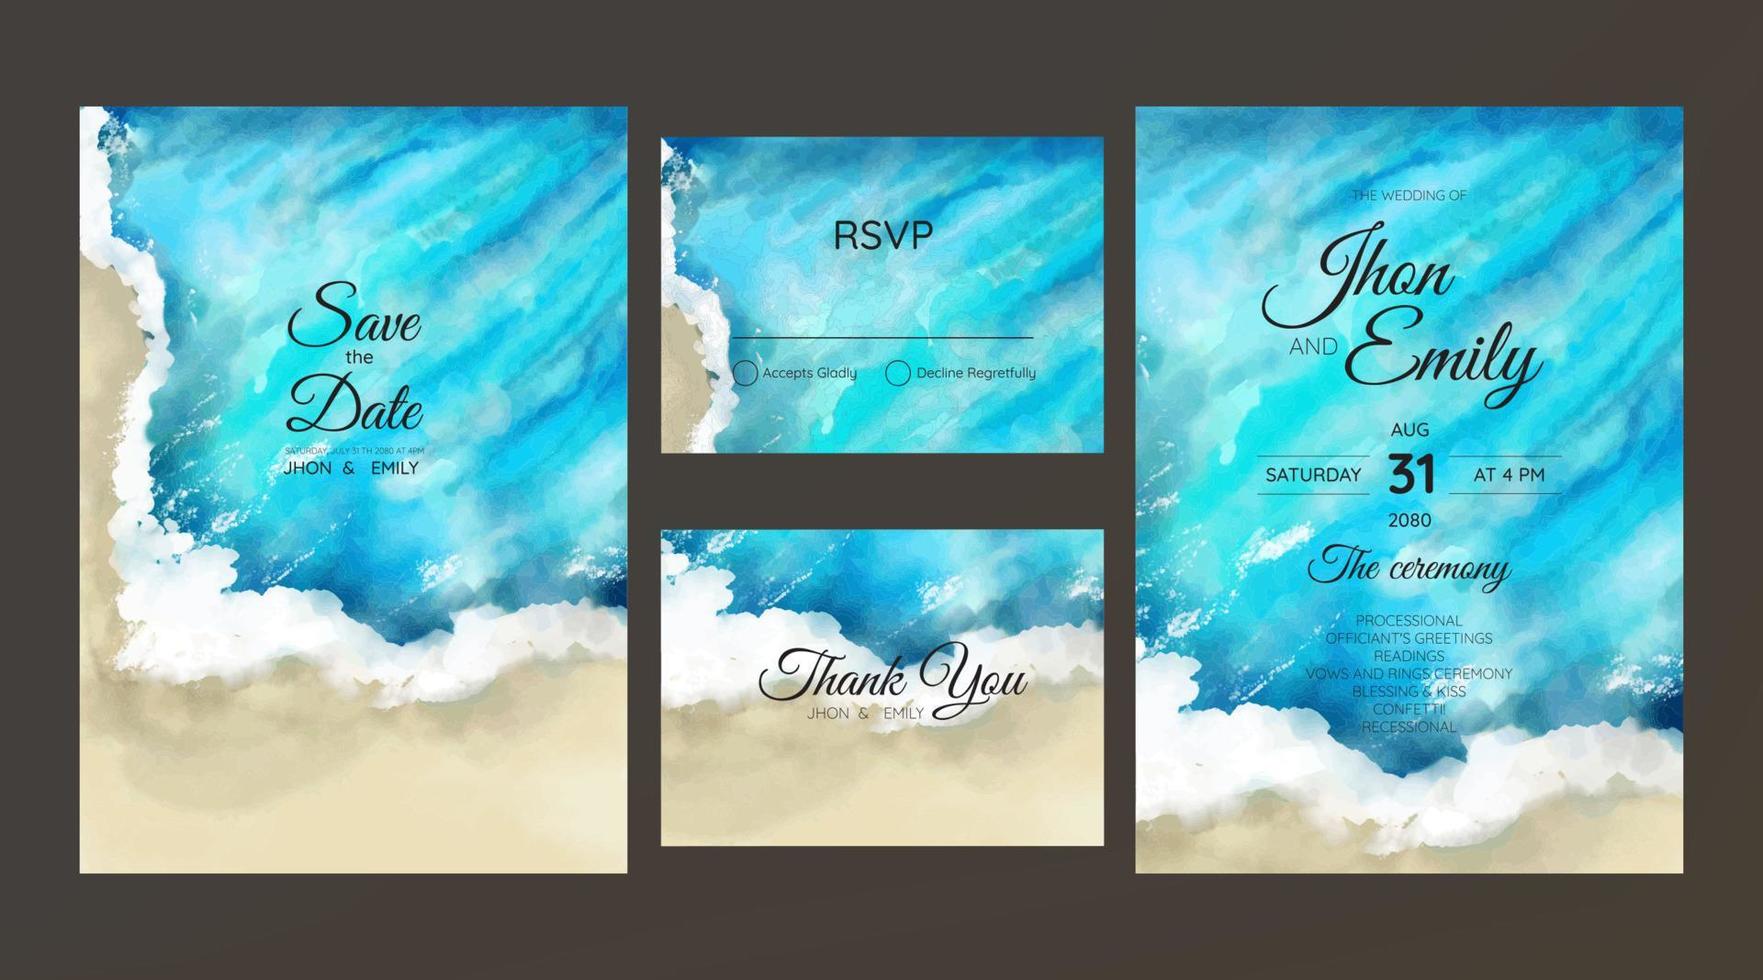 Hochzeitskarten, Einladung. Save the Date Design im Meeresstil. romantischer strandhochzeitssommerhintergrund vektor